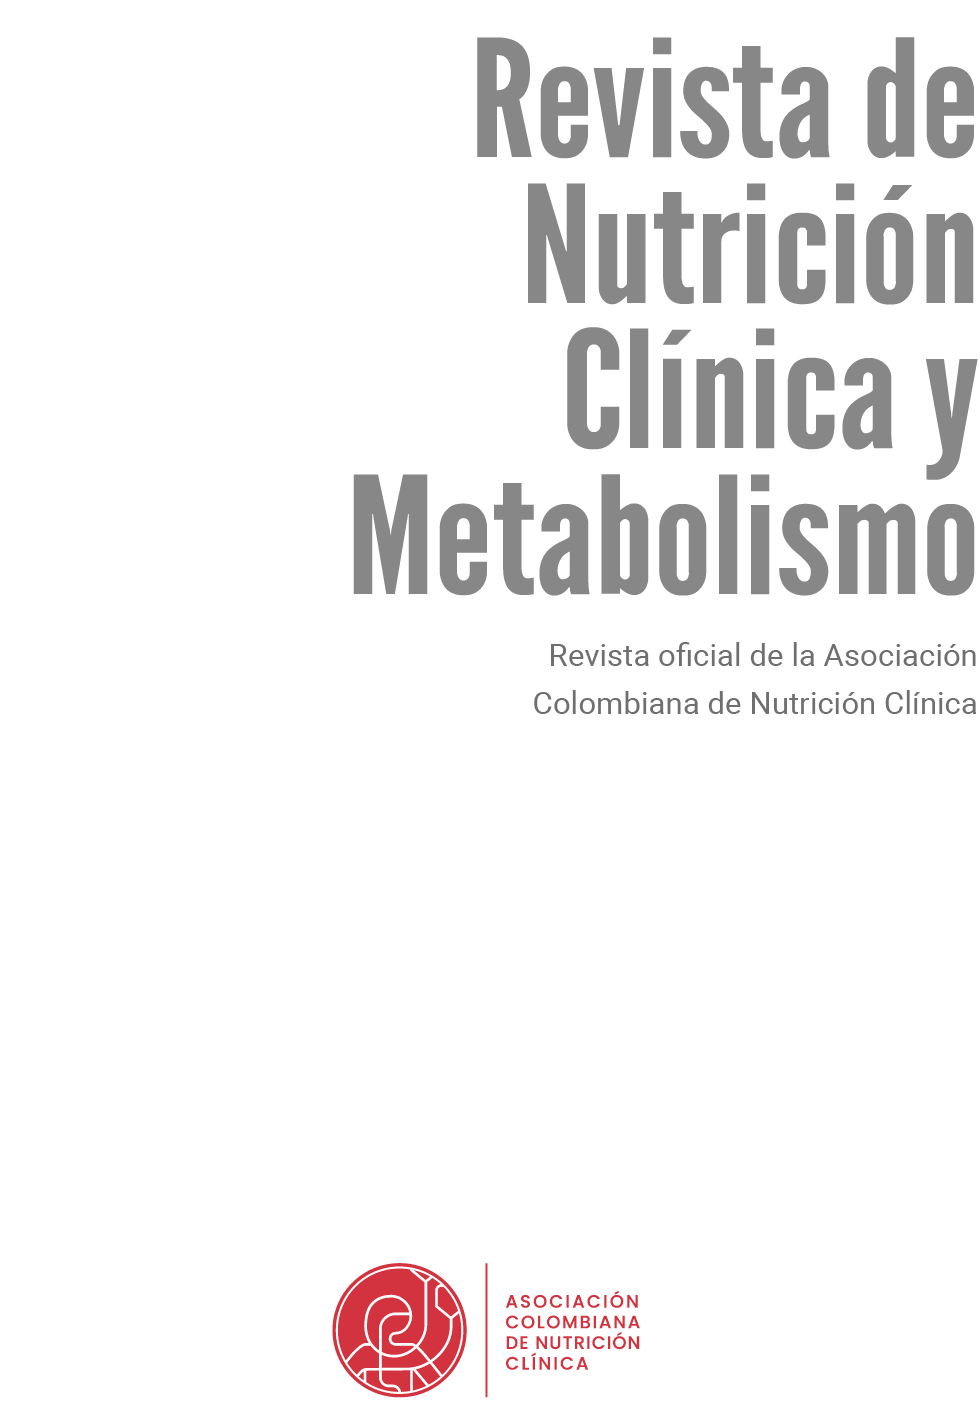 Vista de Revista completa Vol 5 N 1 Revista de Nutrición Clínica y Metabolismo